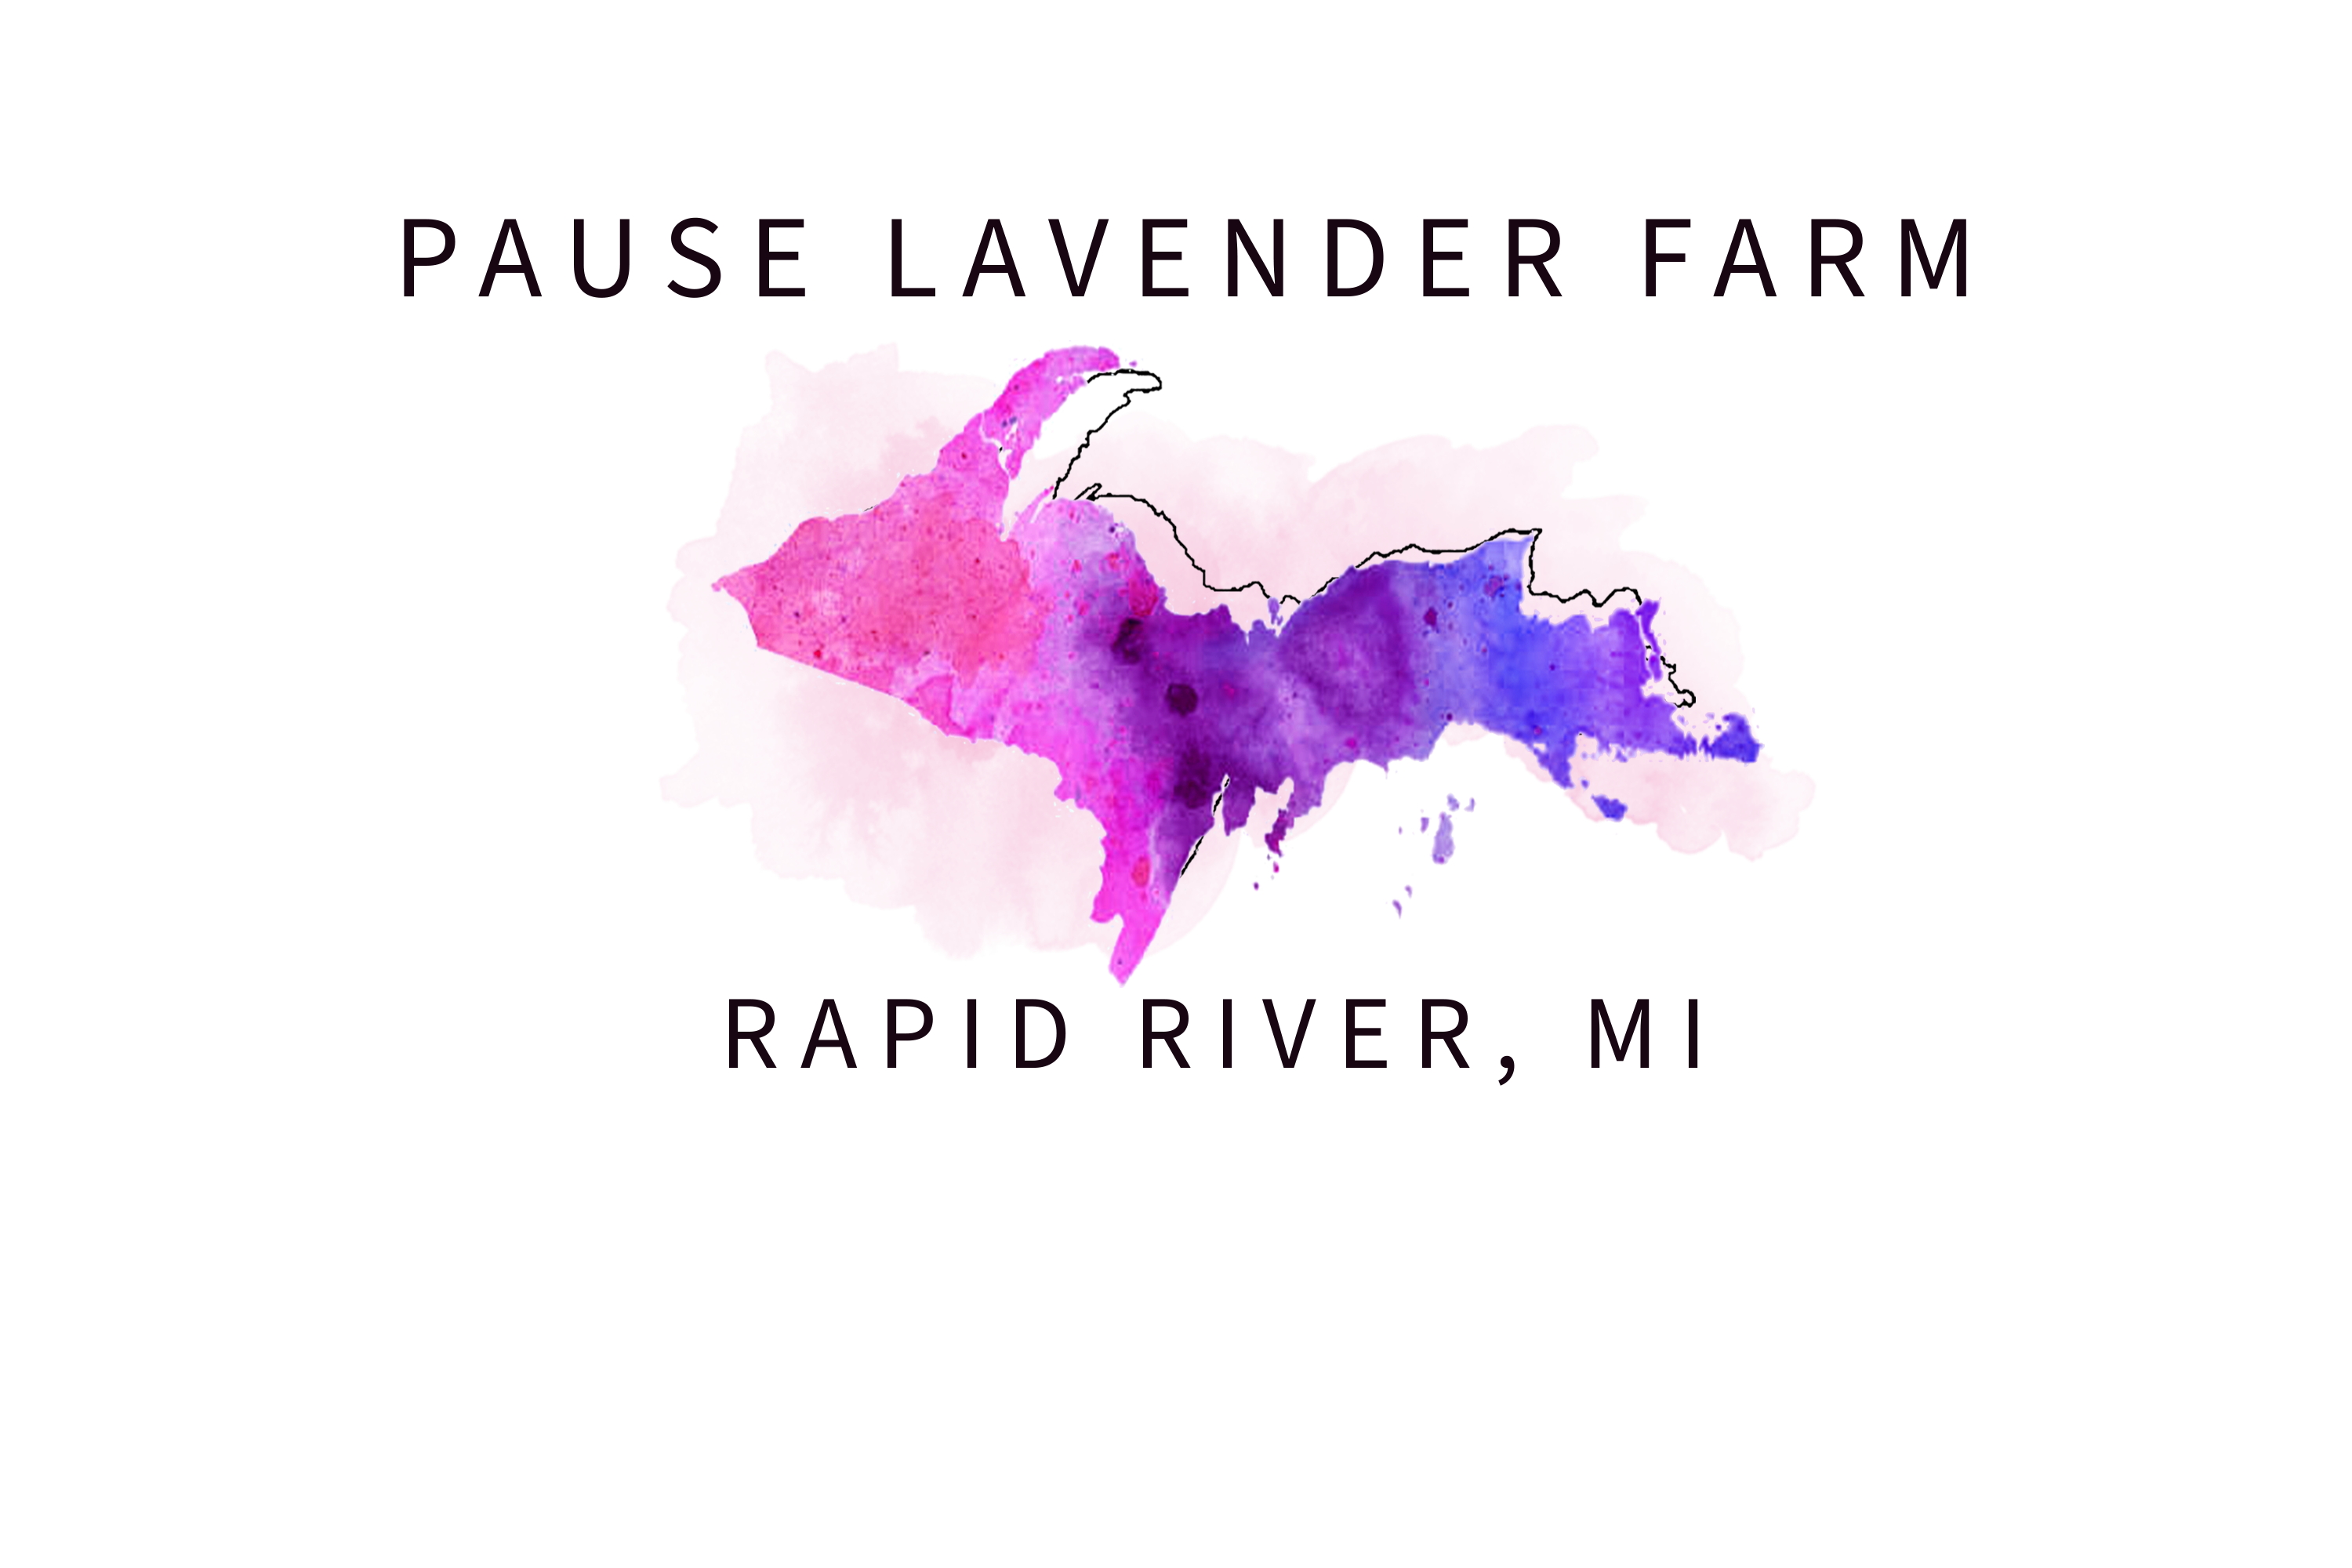 Pause Lavender Farm